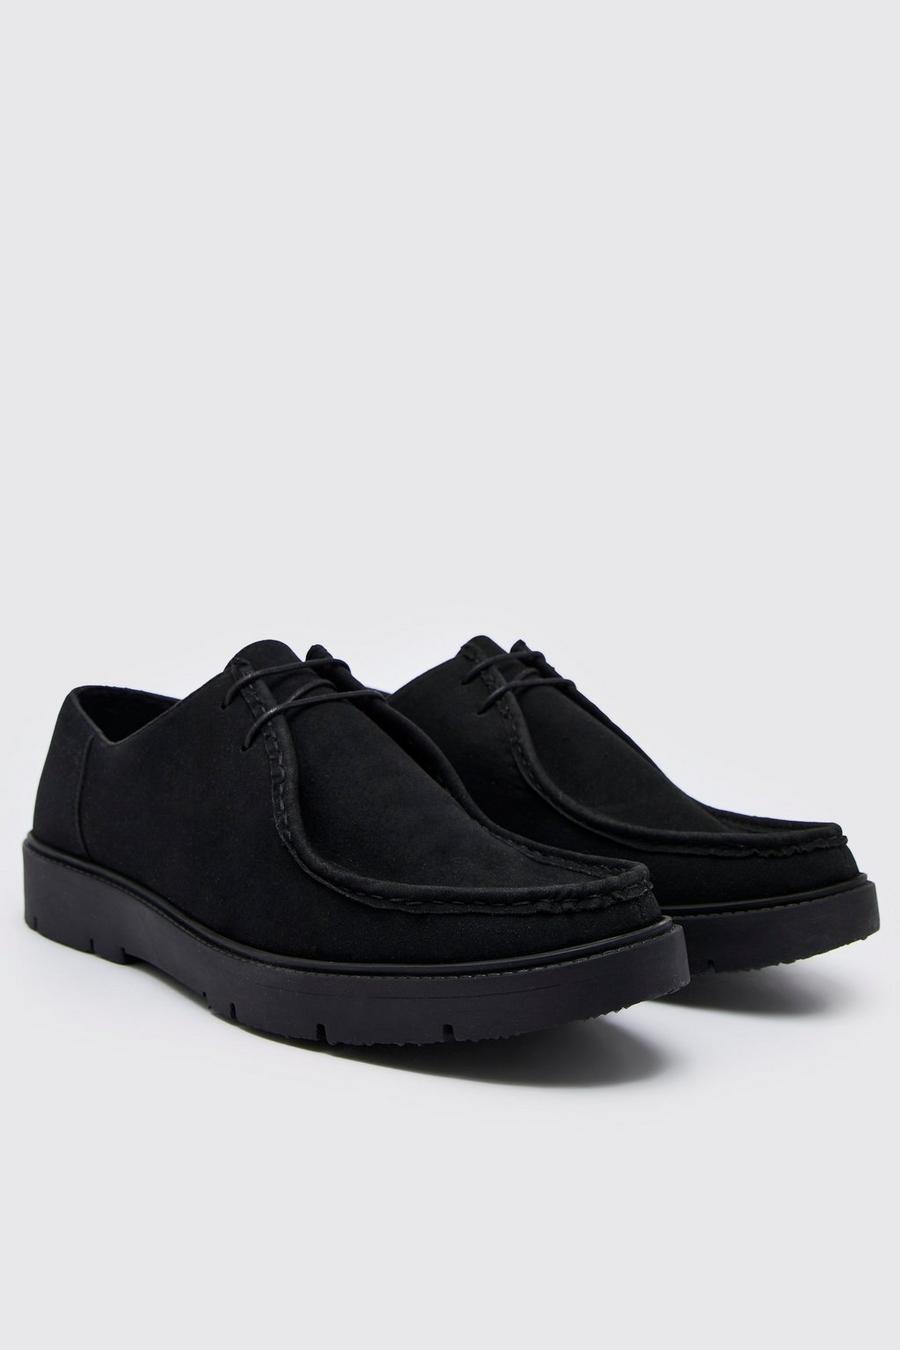 שחור negro נעלי דרבי מבד דמוי זמש image number 1